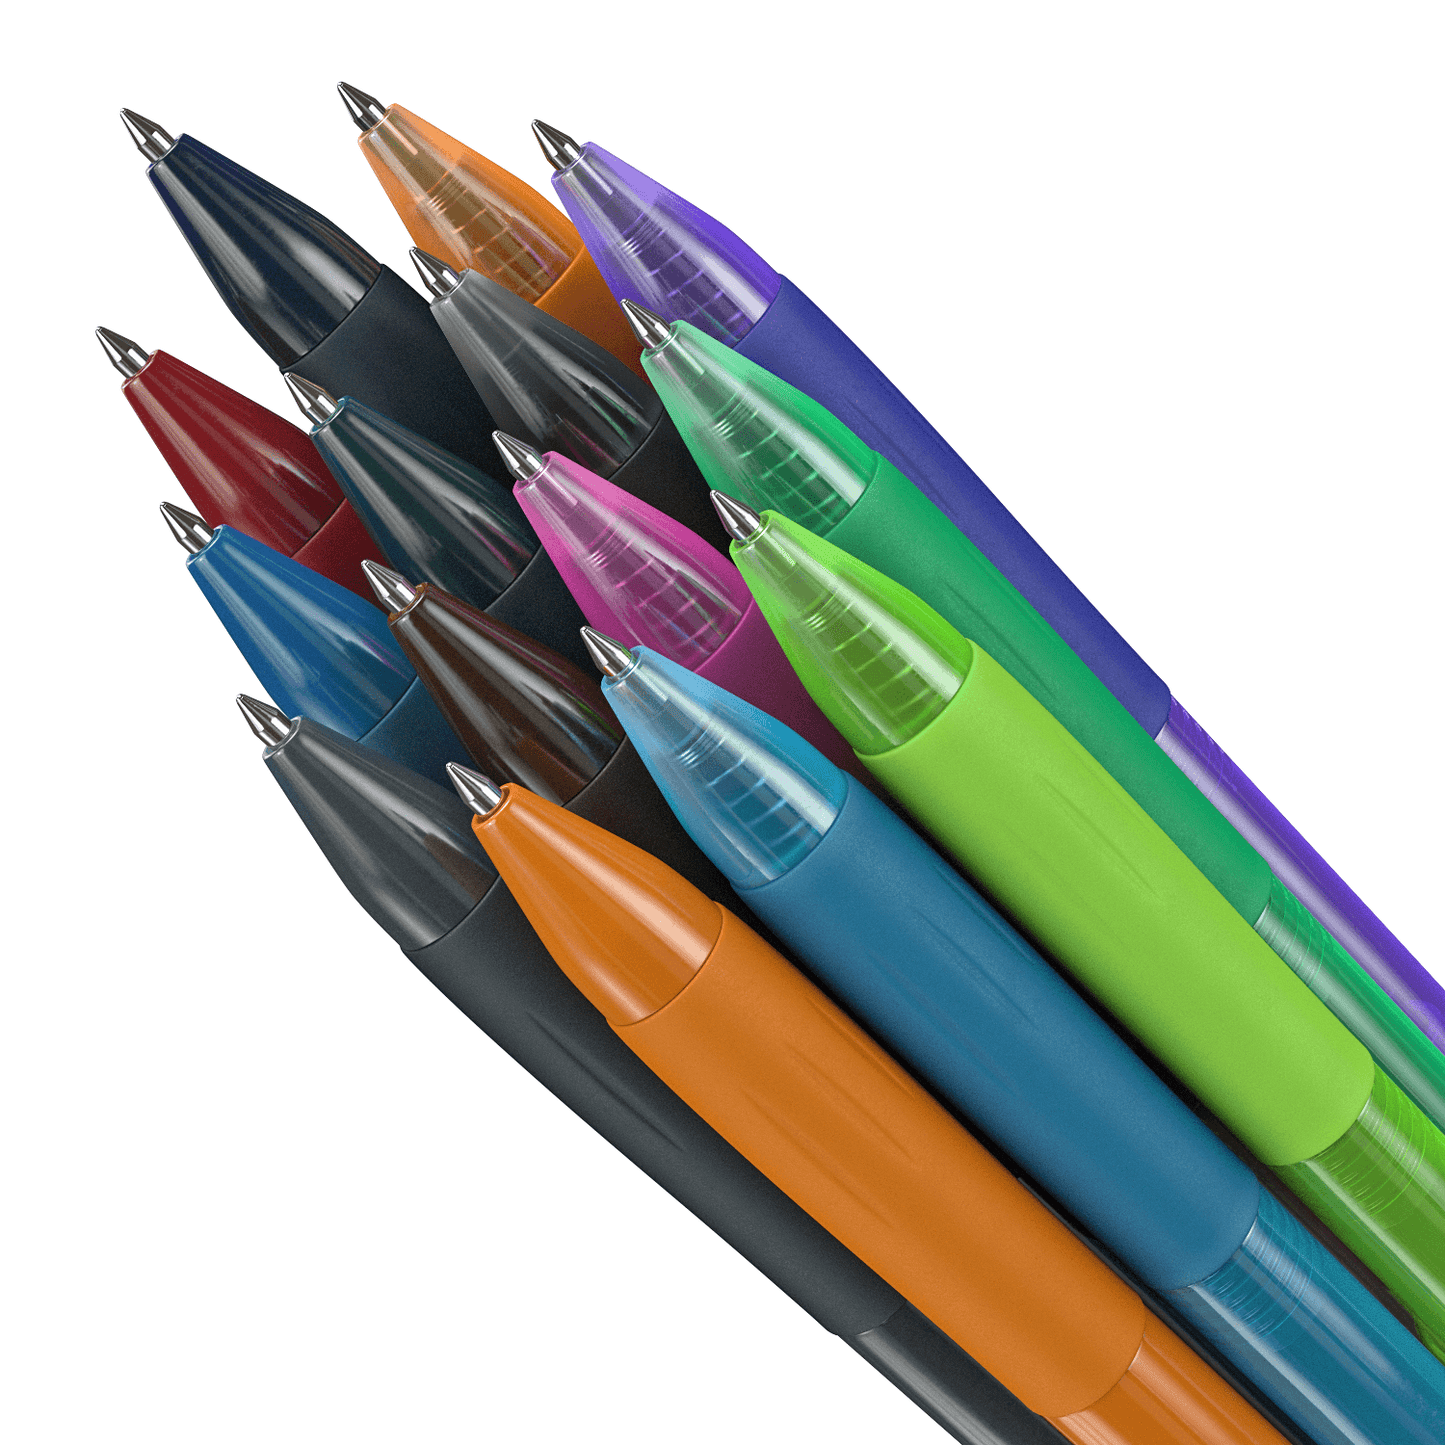 Arteza Retractable Gel Ink Pens, Vintage & Bright Colors - Set of 24